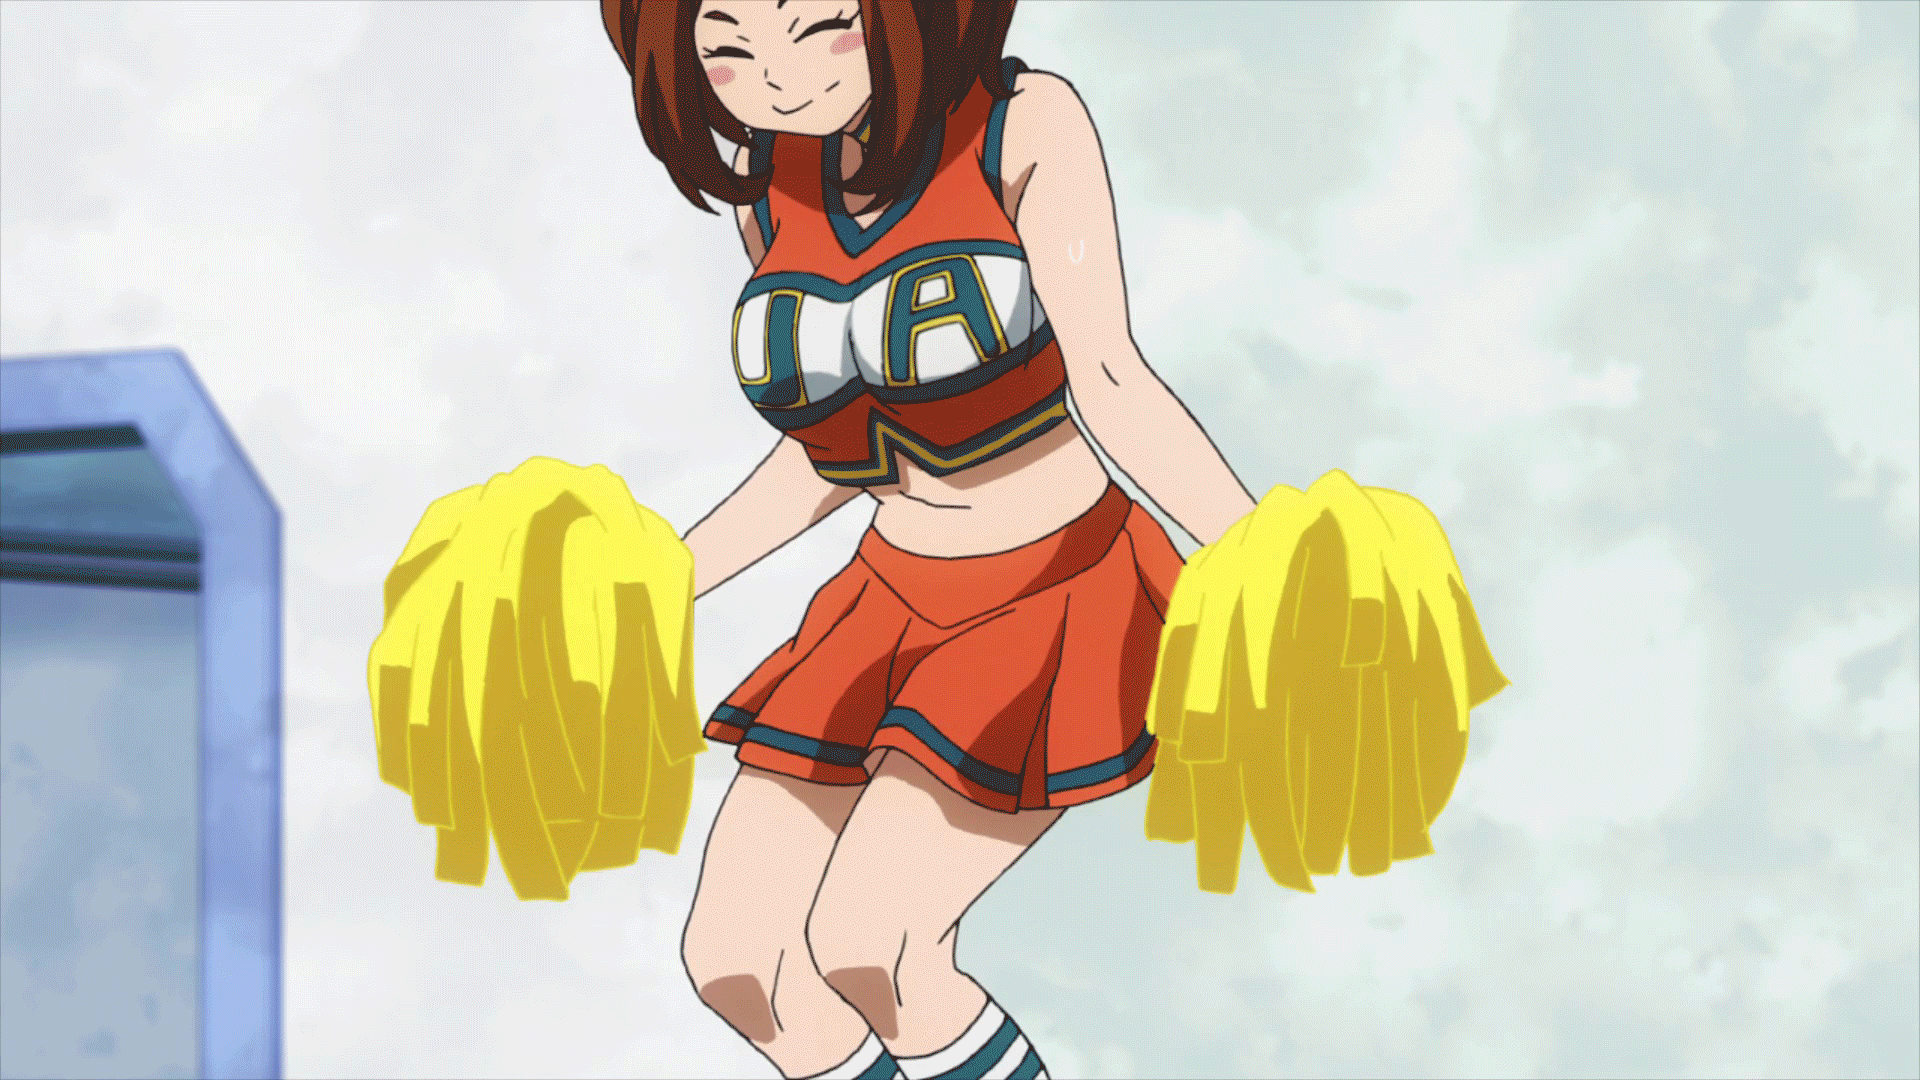 Uraraka in Cheerleader outfit GIF.